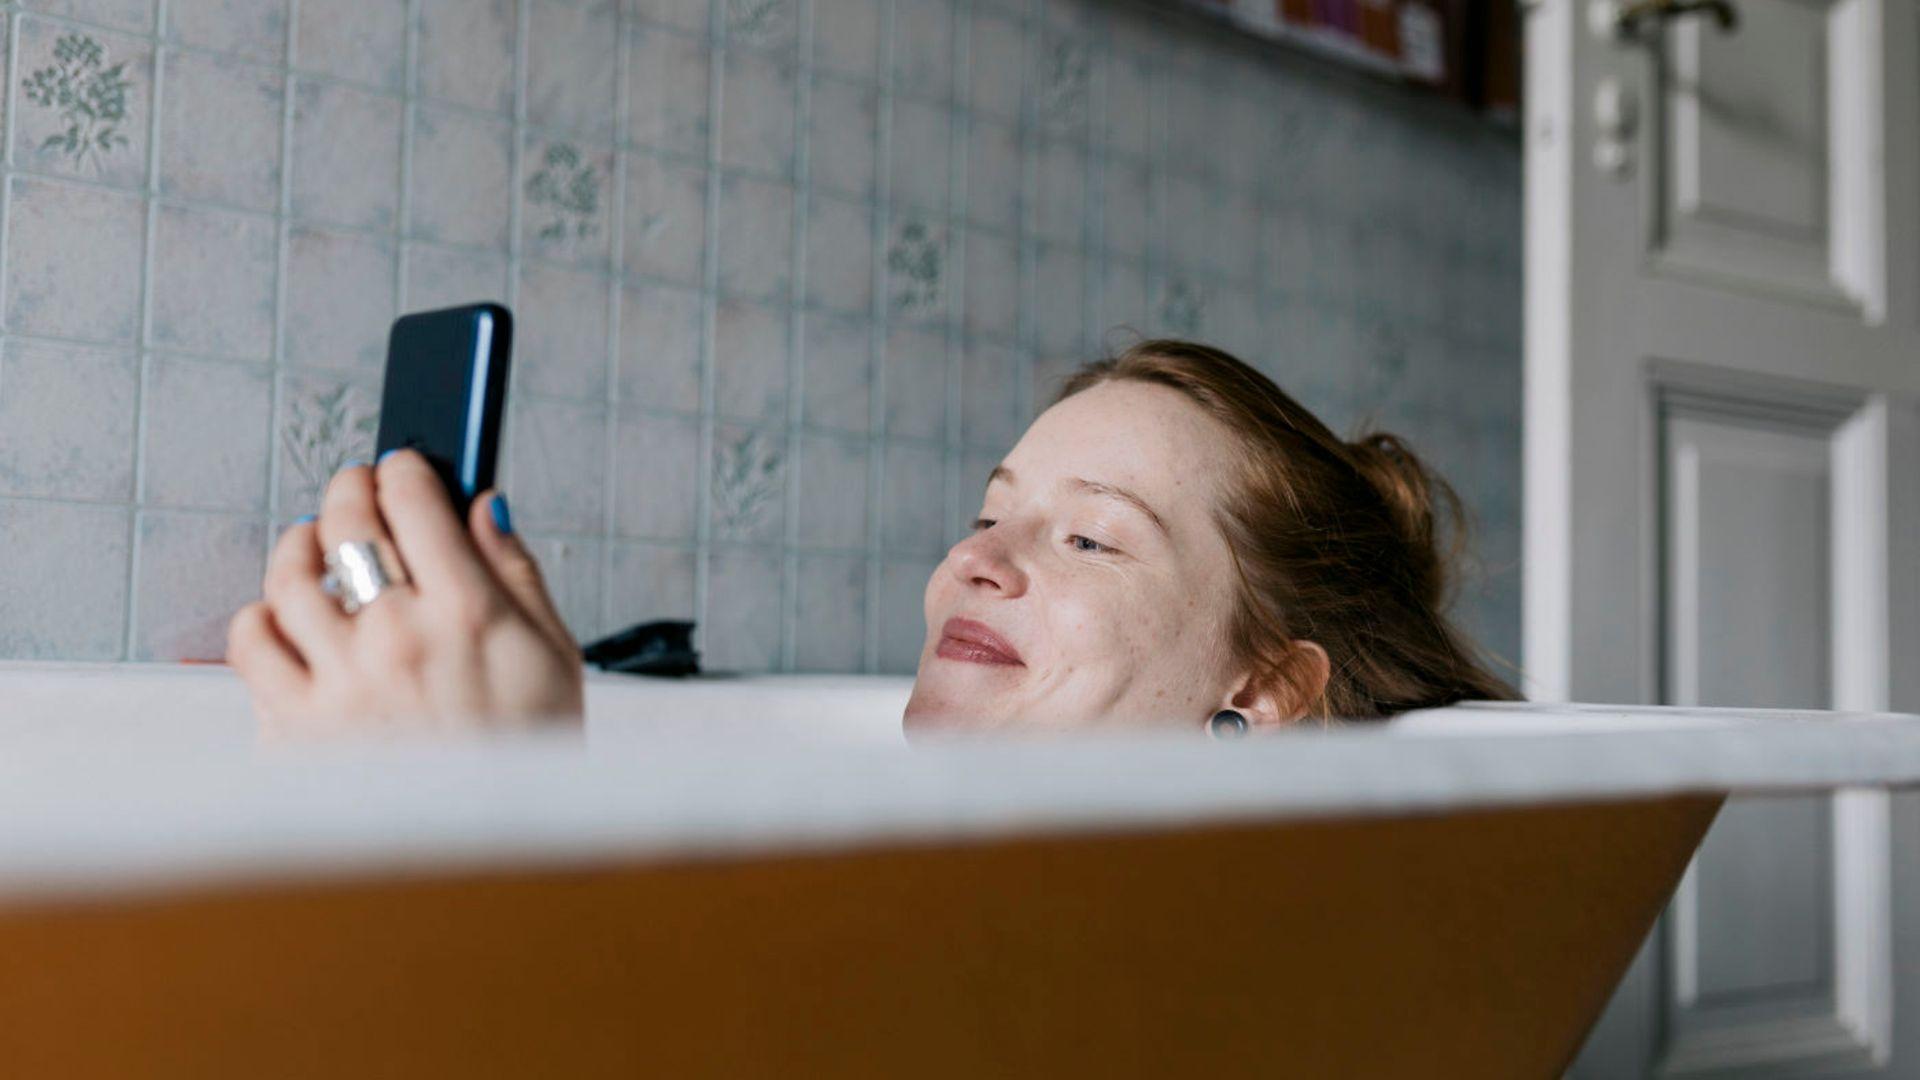 Symbolbild: Frau mit Handy in der Badewanne